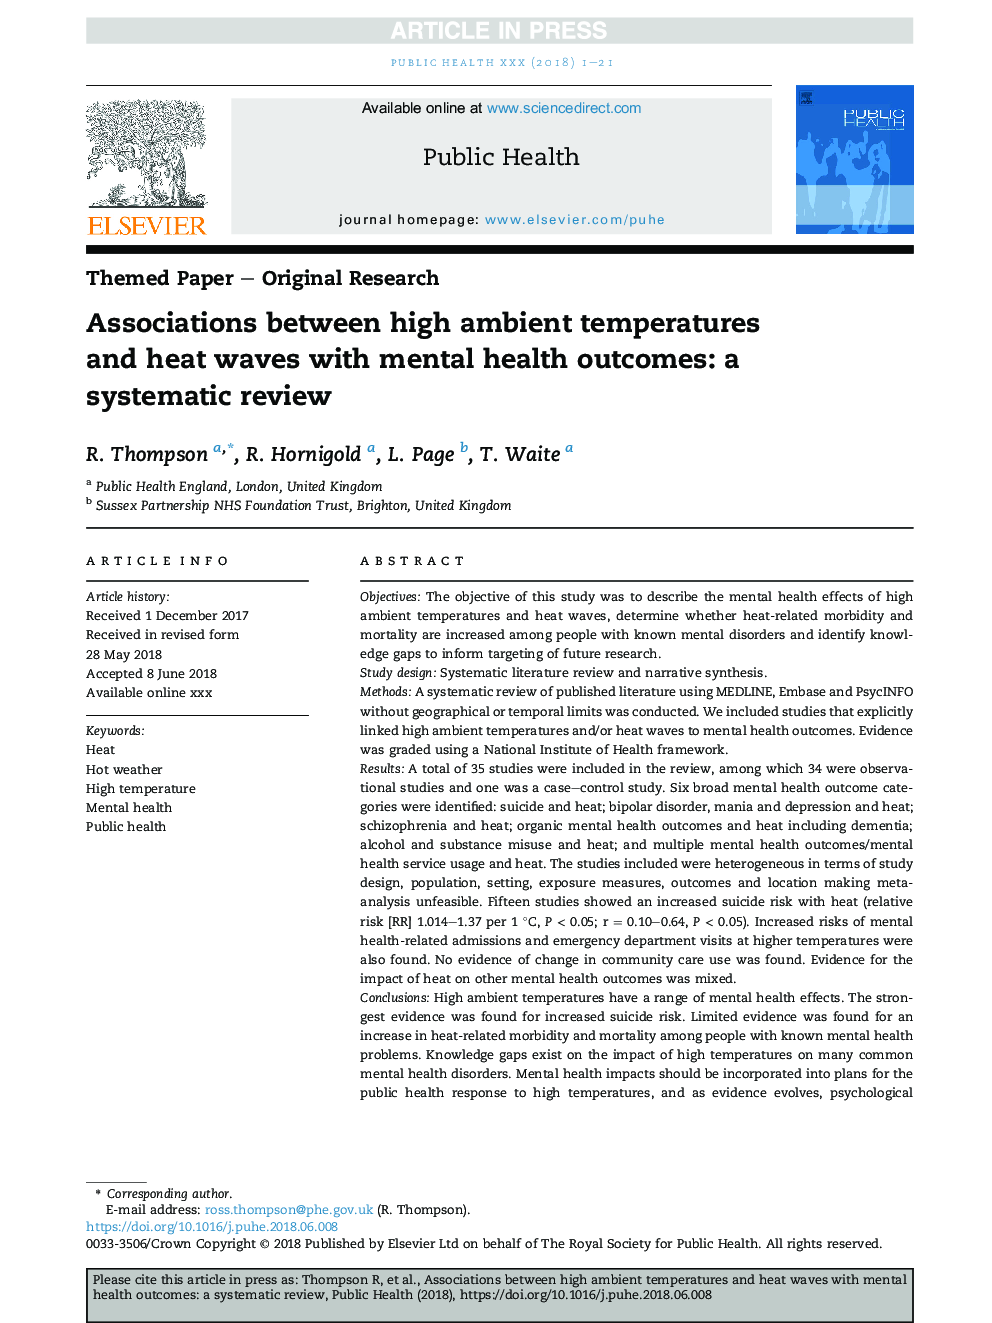 ارتباط بین دمای بالا و امواج گرما با نتایج سلامت روان: یک بررسی سیستماتیک 